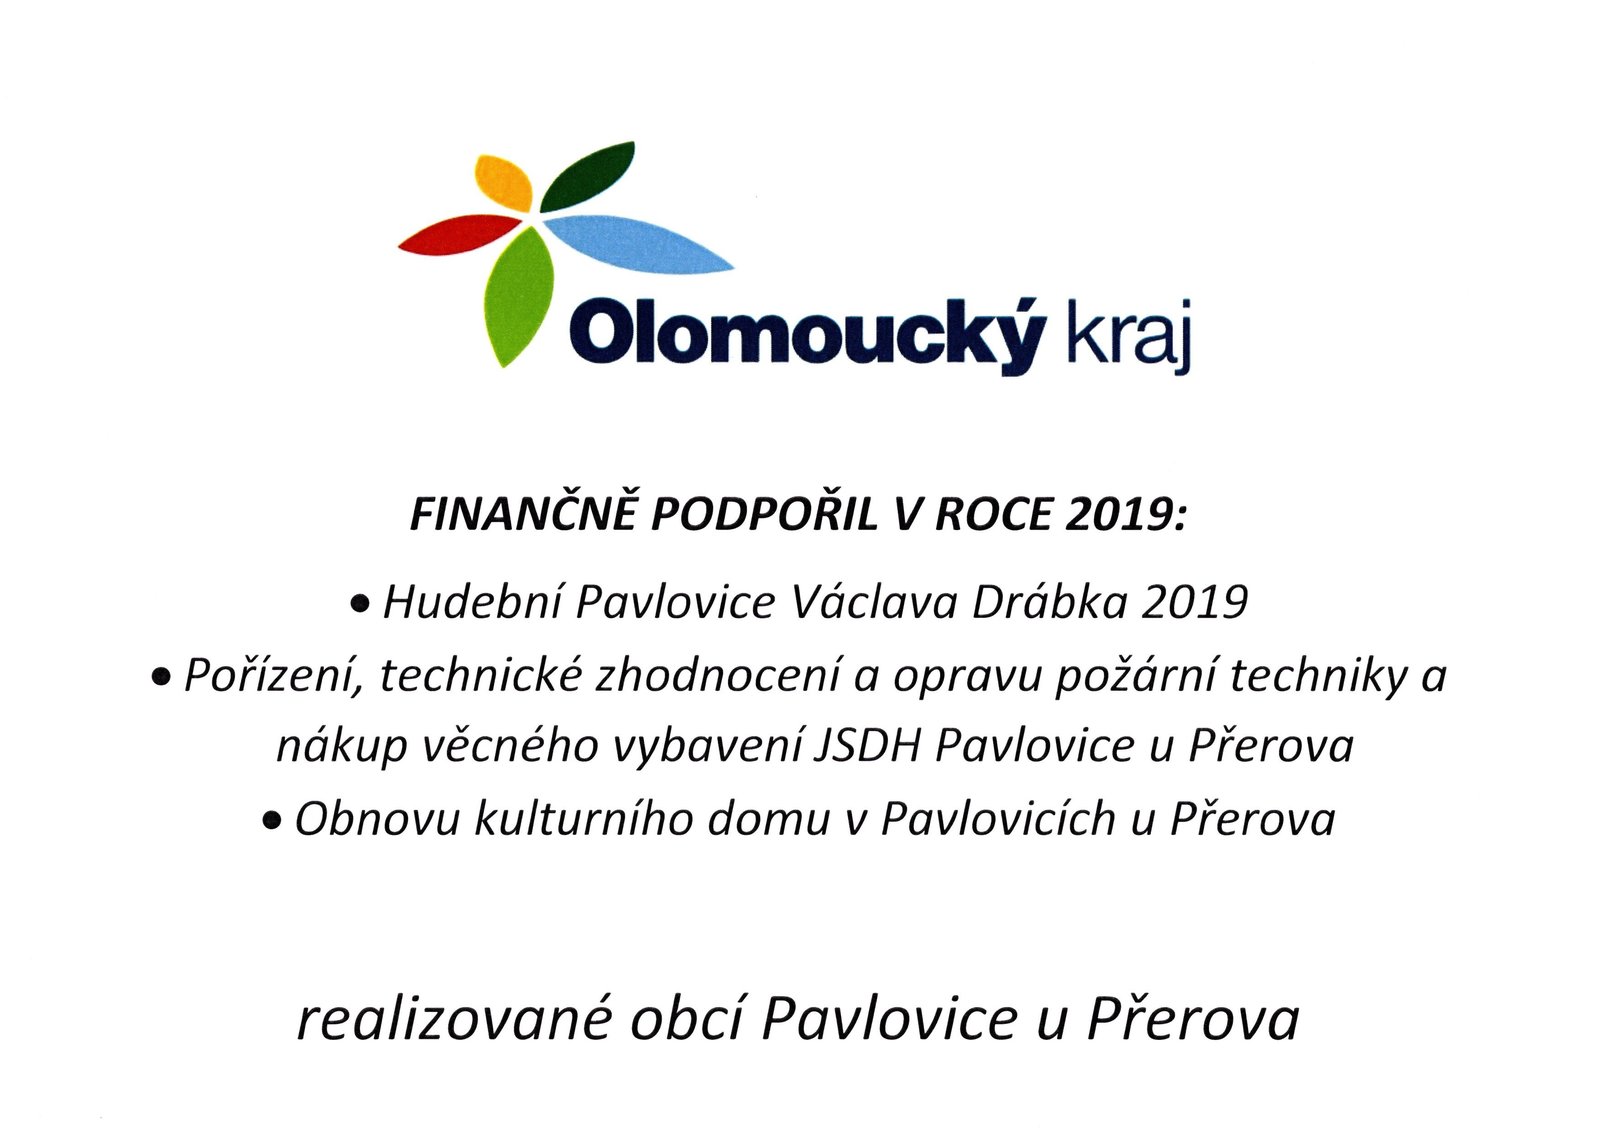 Olomoucký kraj finančně podpořil v roce 2019